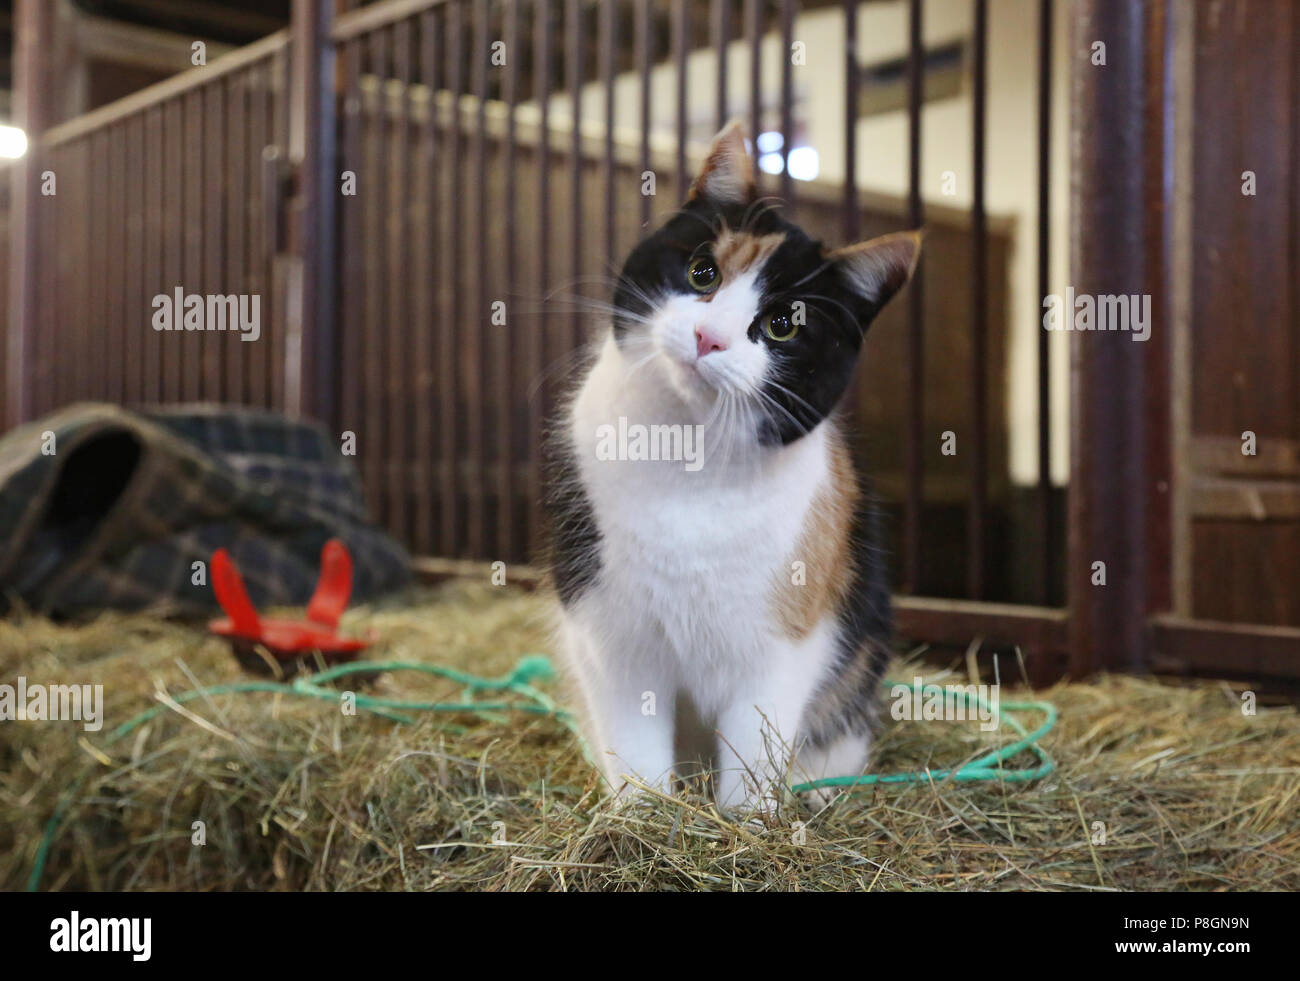 Neuenhagen, cat se asienta en el establo curiosamente en un fardo de heno Foto de stock